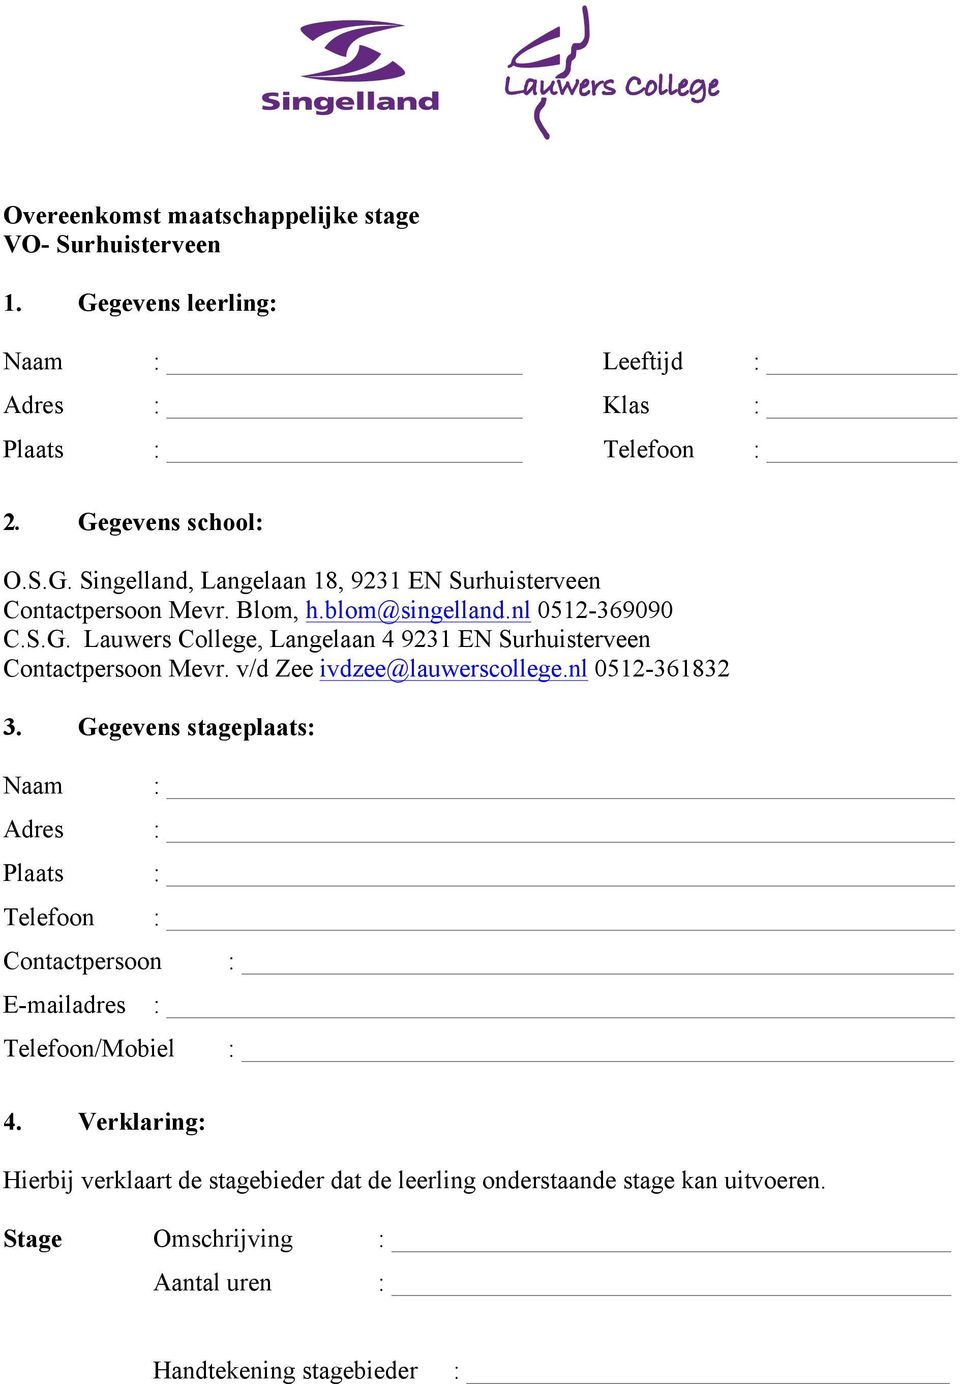 v/d Zee ivdzee@lauwerscollege.nl 0512-361832 3. Gegevens stageplaats: Naam Adres Plaats Telefoon Contactpersoon E-mailadres Telefoon/Mobiel _ 4.